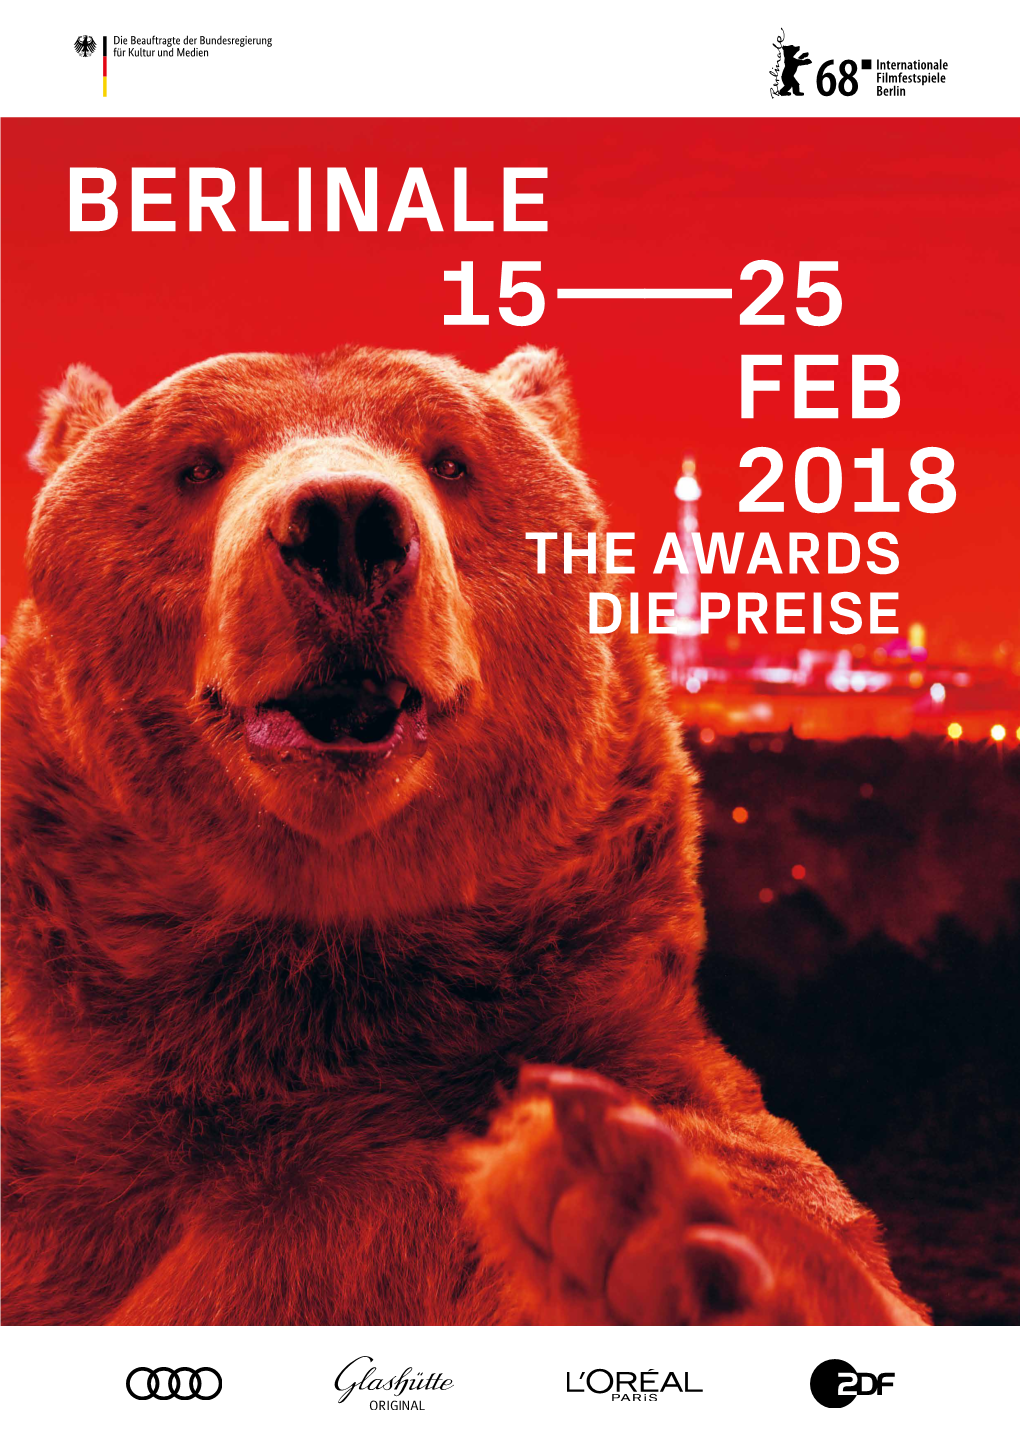 Berlinale 15——25 Feb 2018 the Awards Die Preise